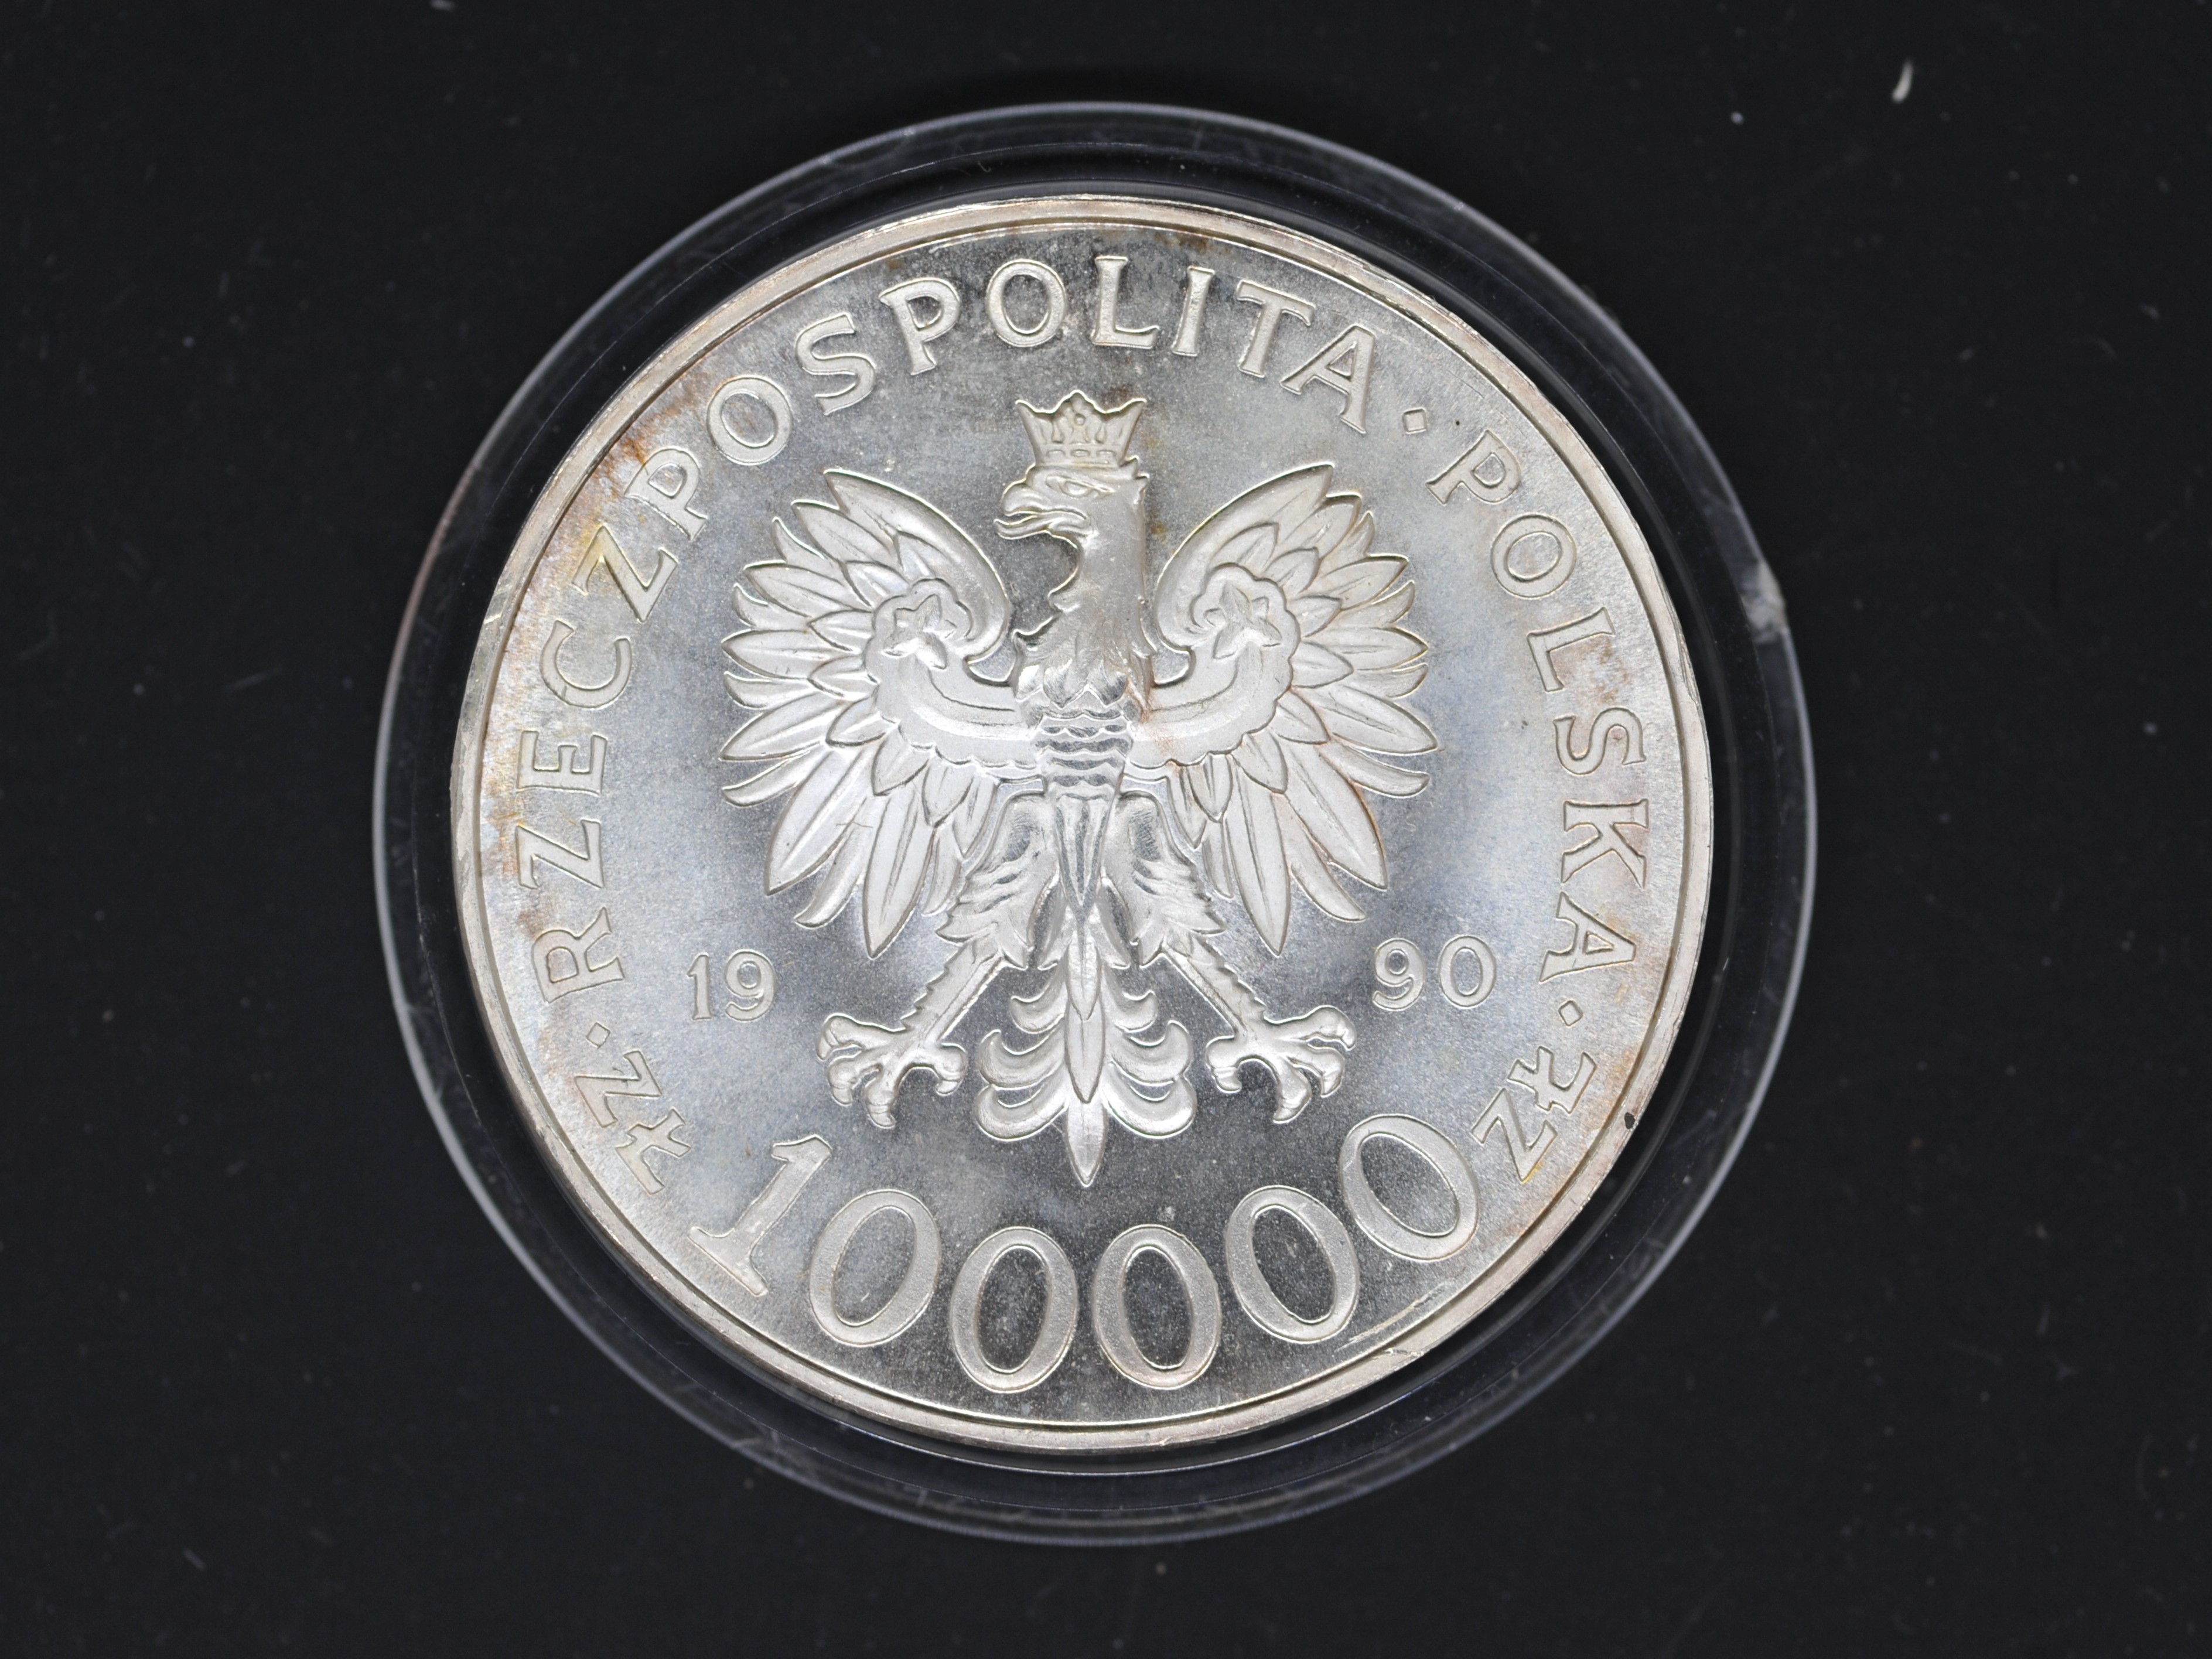 Silver - Polish Solidarity - A 1 troy oz (31.1 grams) silver collectible coin.